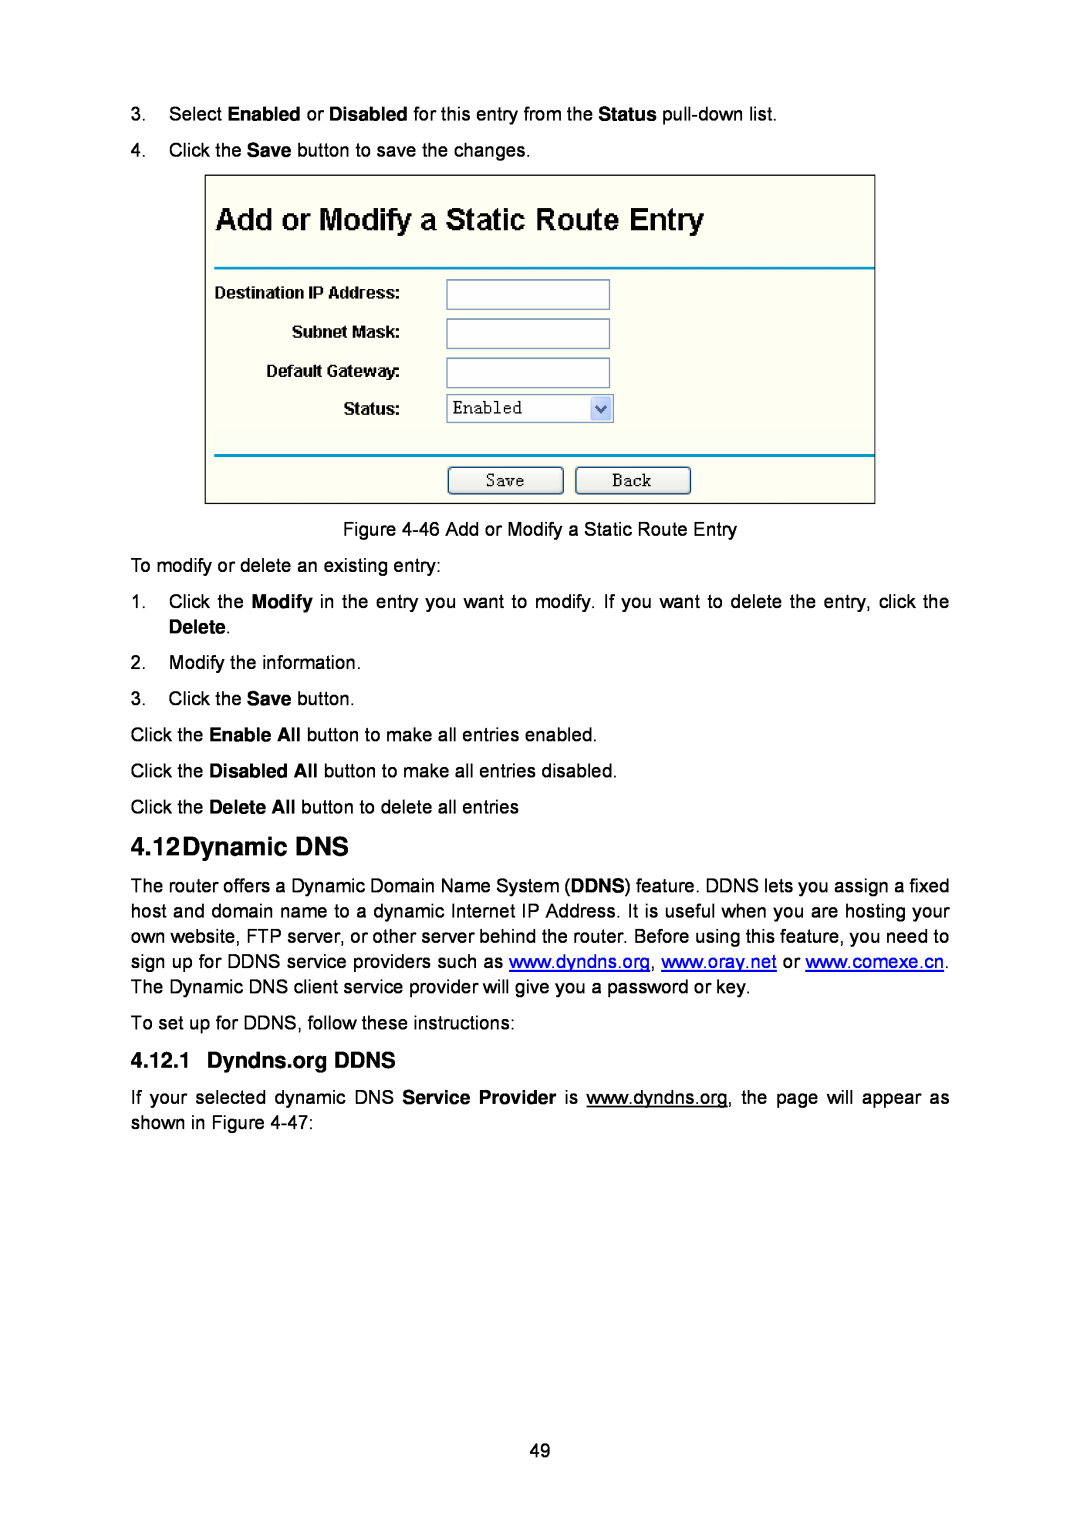 TP-Link TL-WA5110G manual 4.12Dynamic DNS, Dyndns.org DDNS 